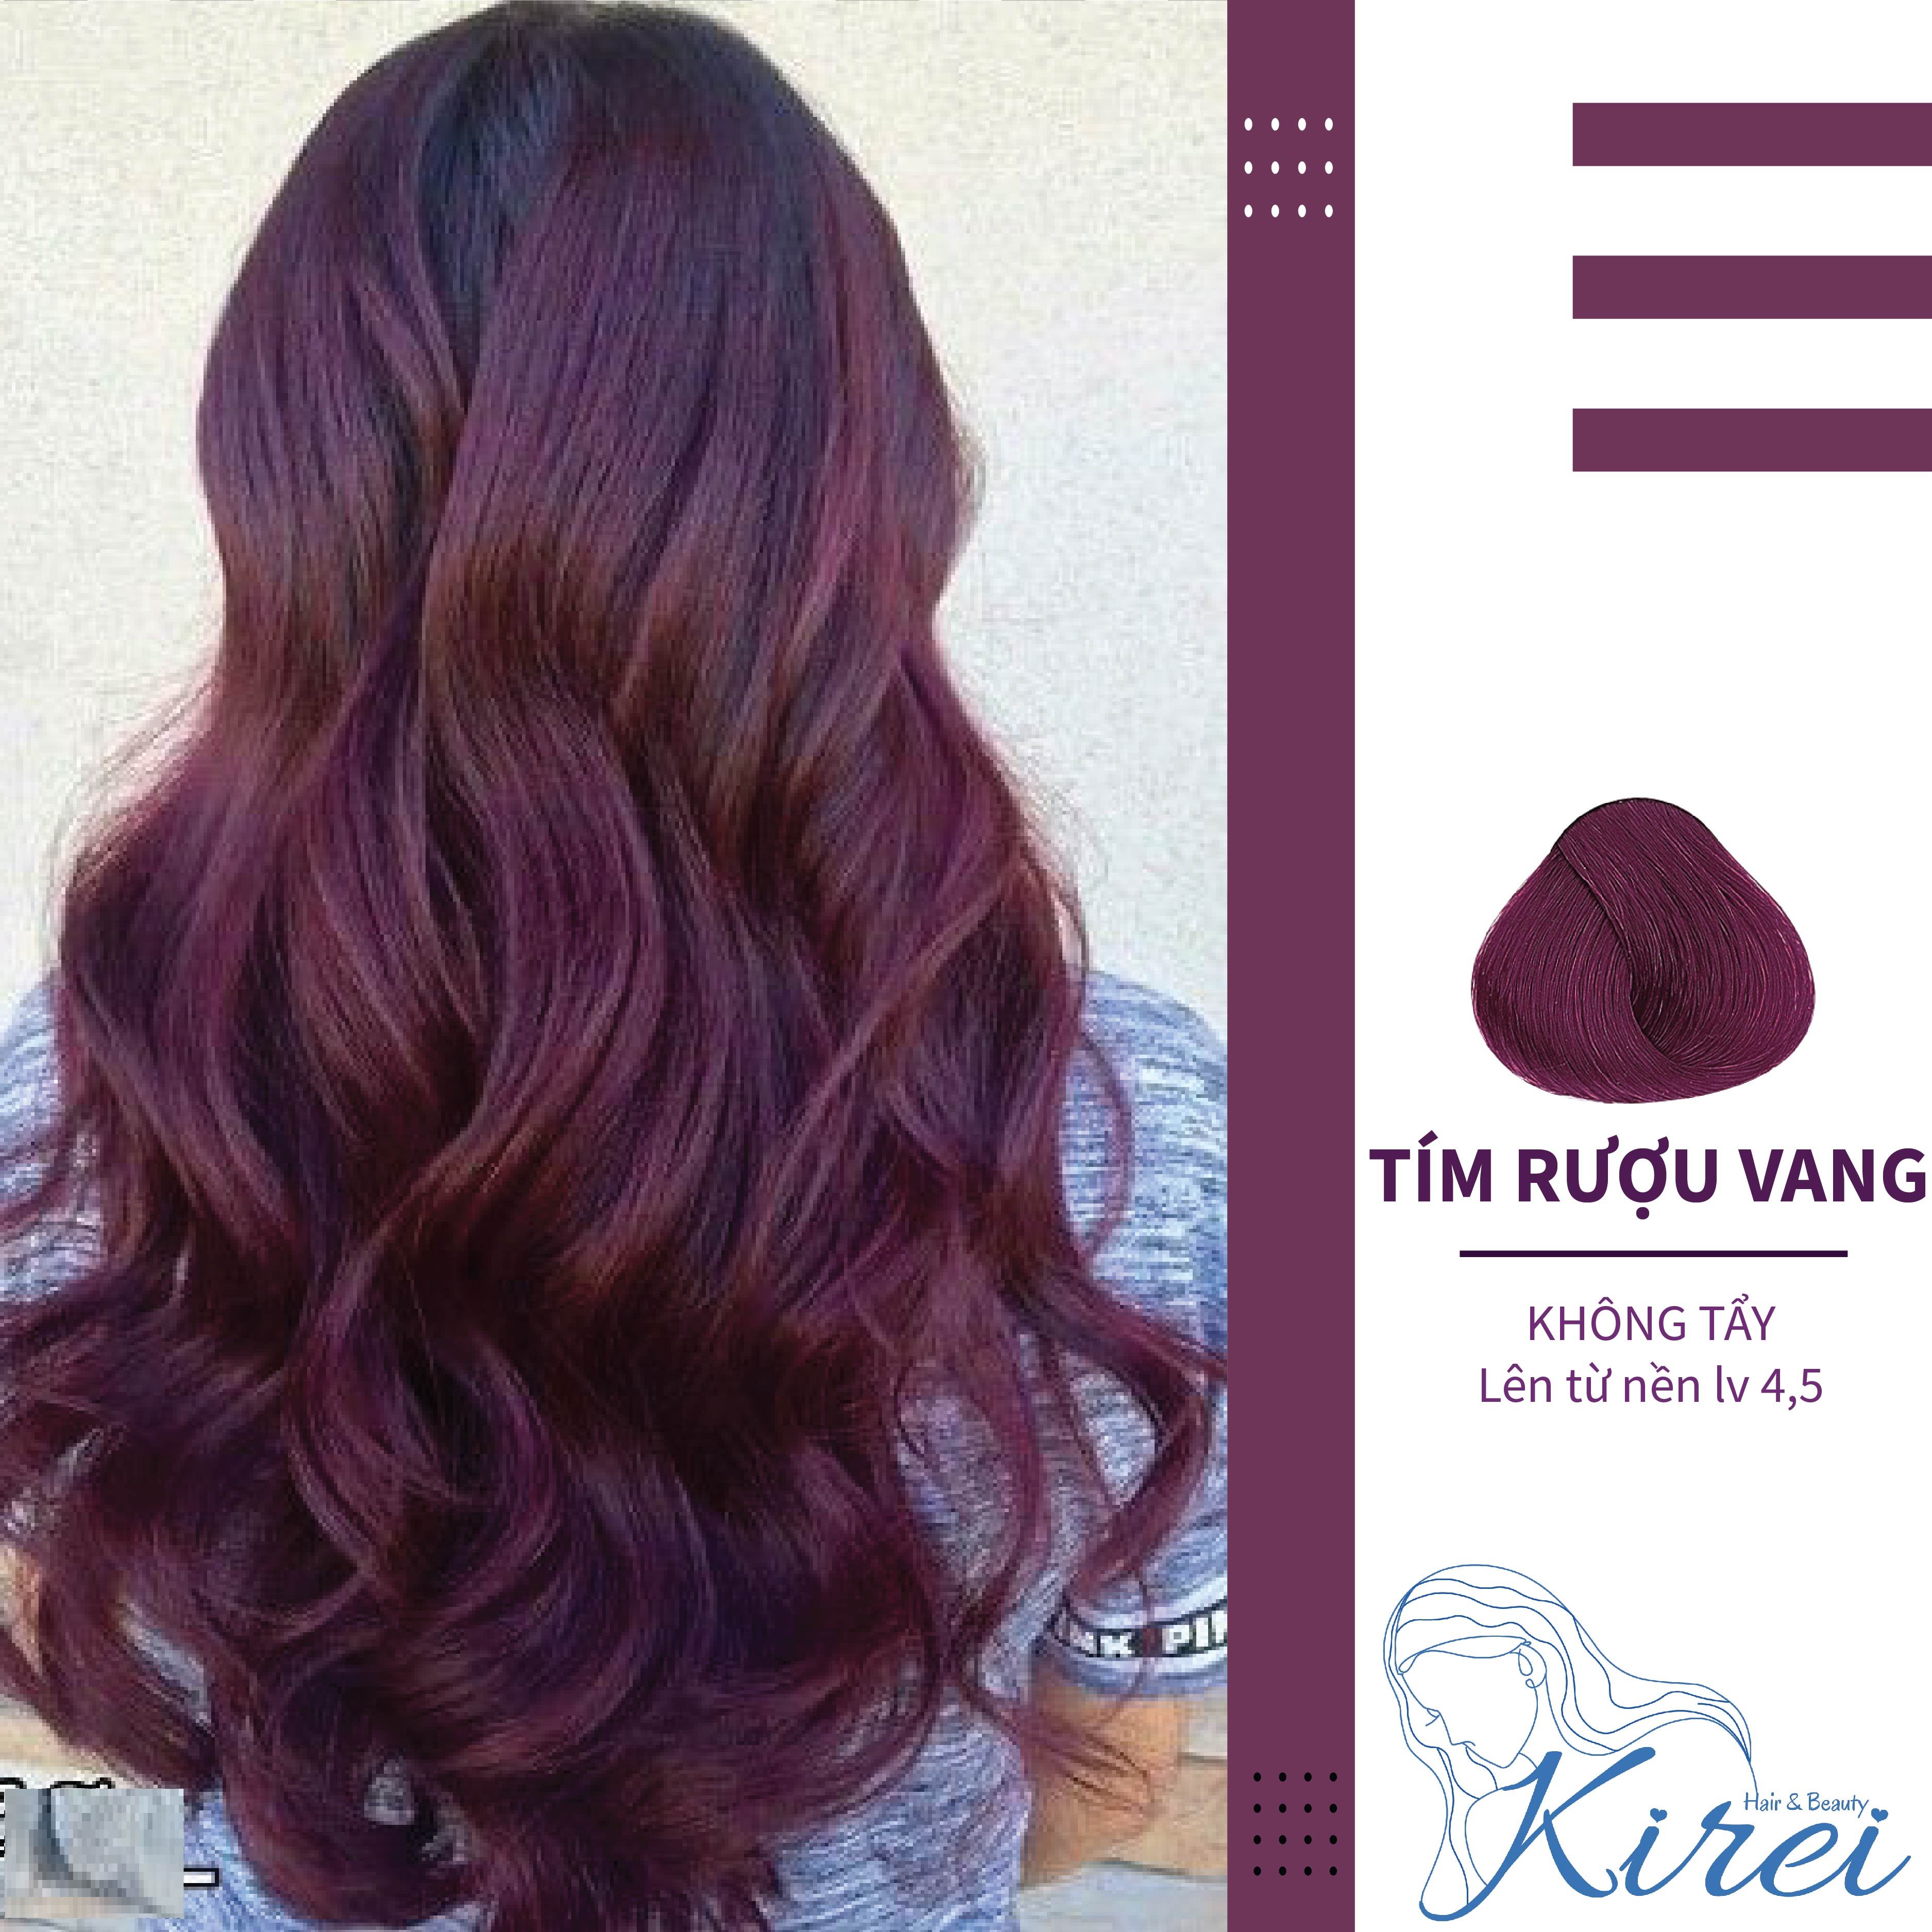 Nhuộm tóc màu tím rượu vang là một xu hướng mới của thời trang. Hãy ngắm nhìn hình ảnh, để cảm nhận sự quyến rũ và nổi bật của màu tím rượu vang trên mái tóc của bạn.